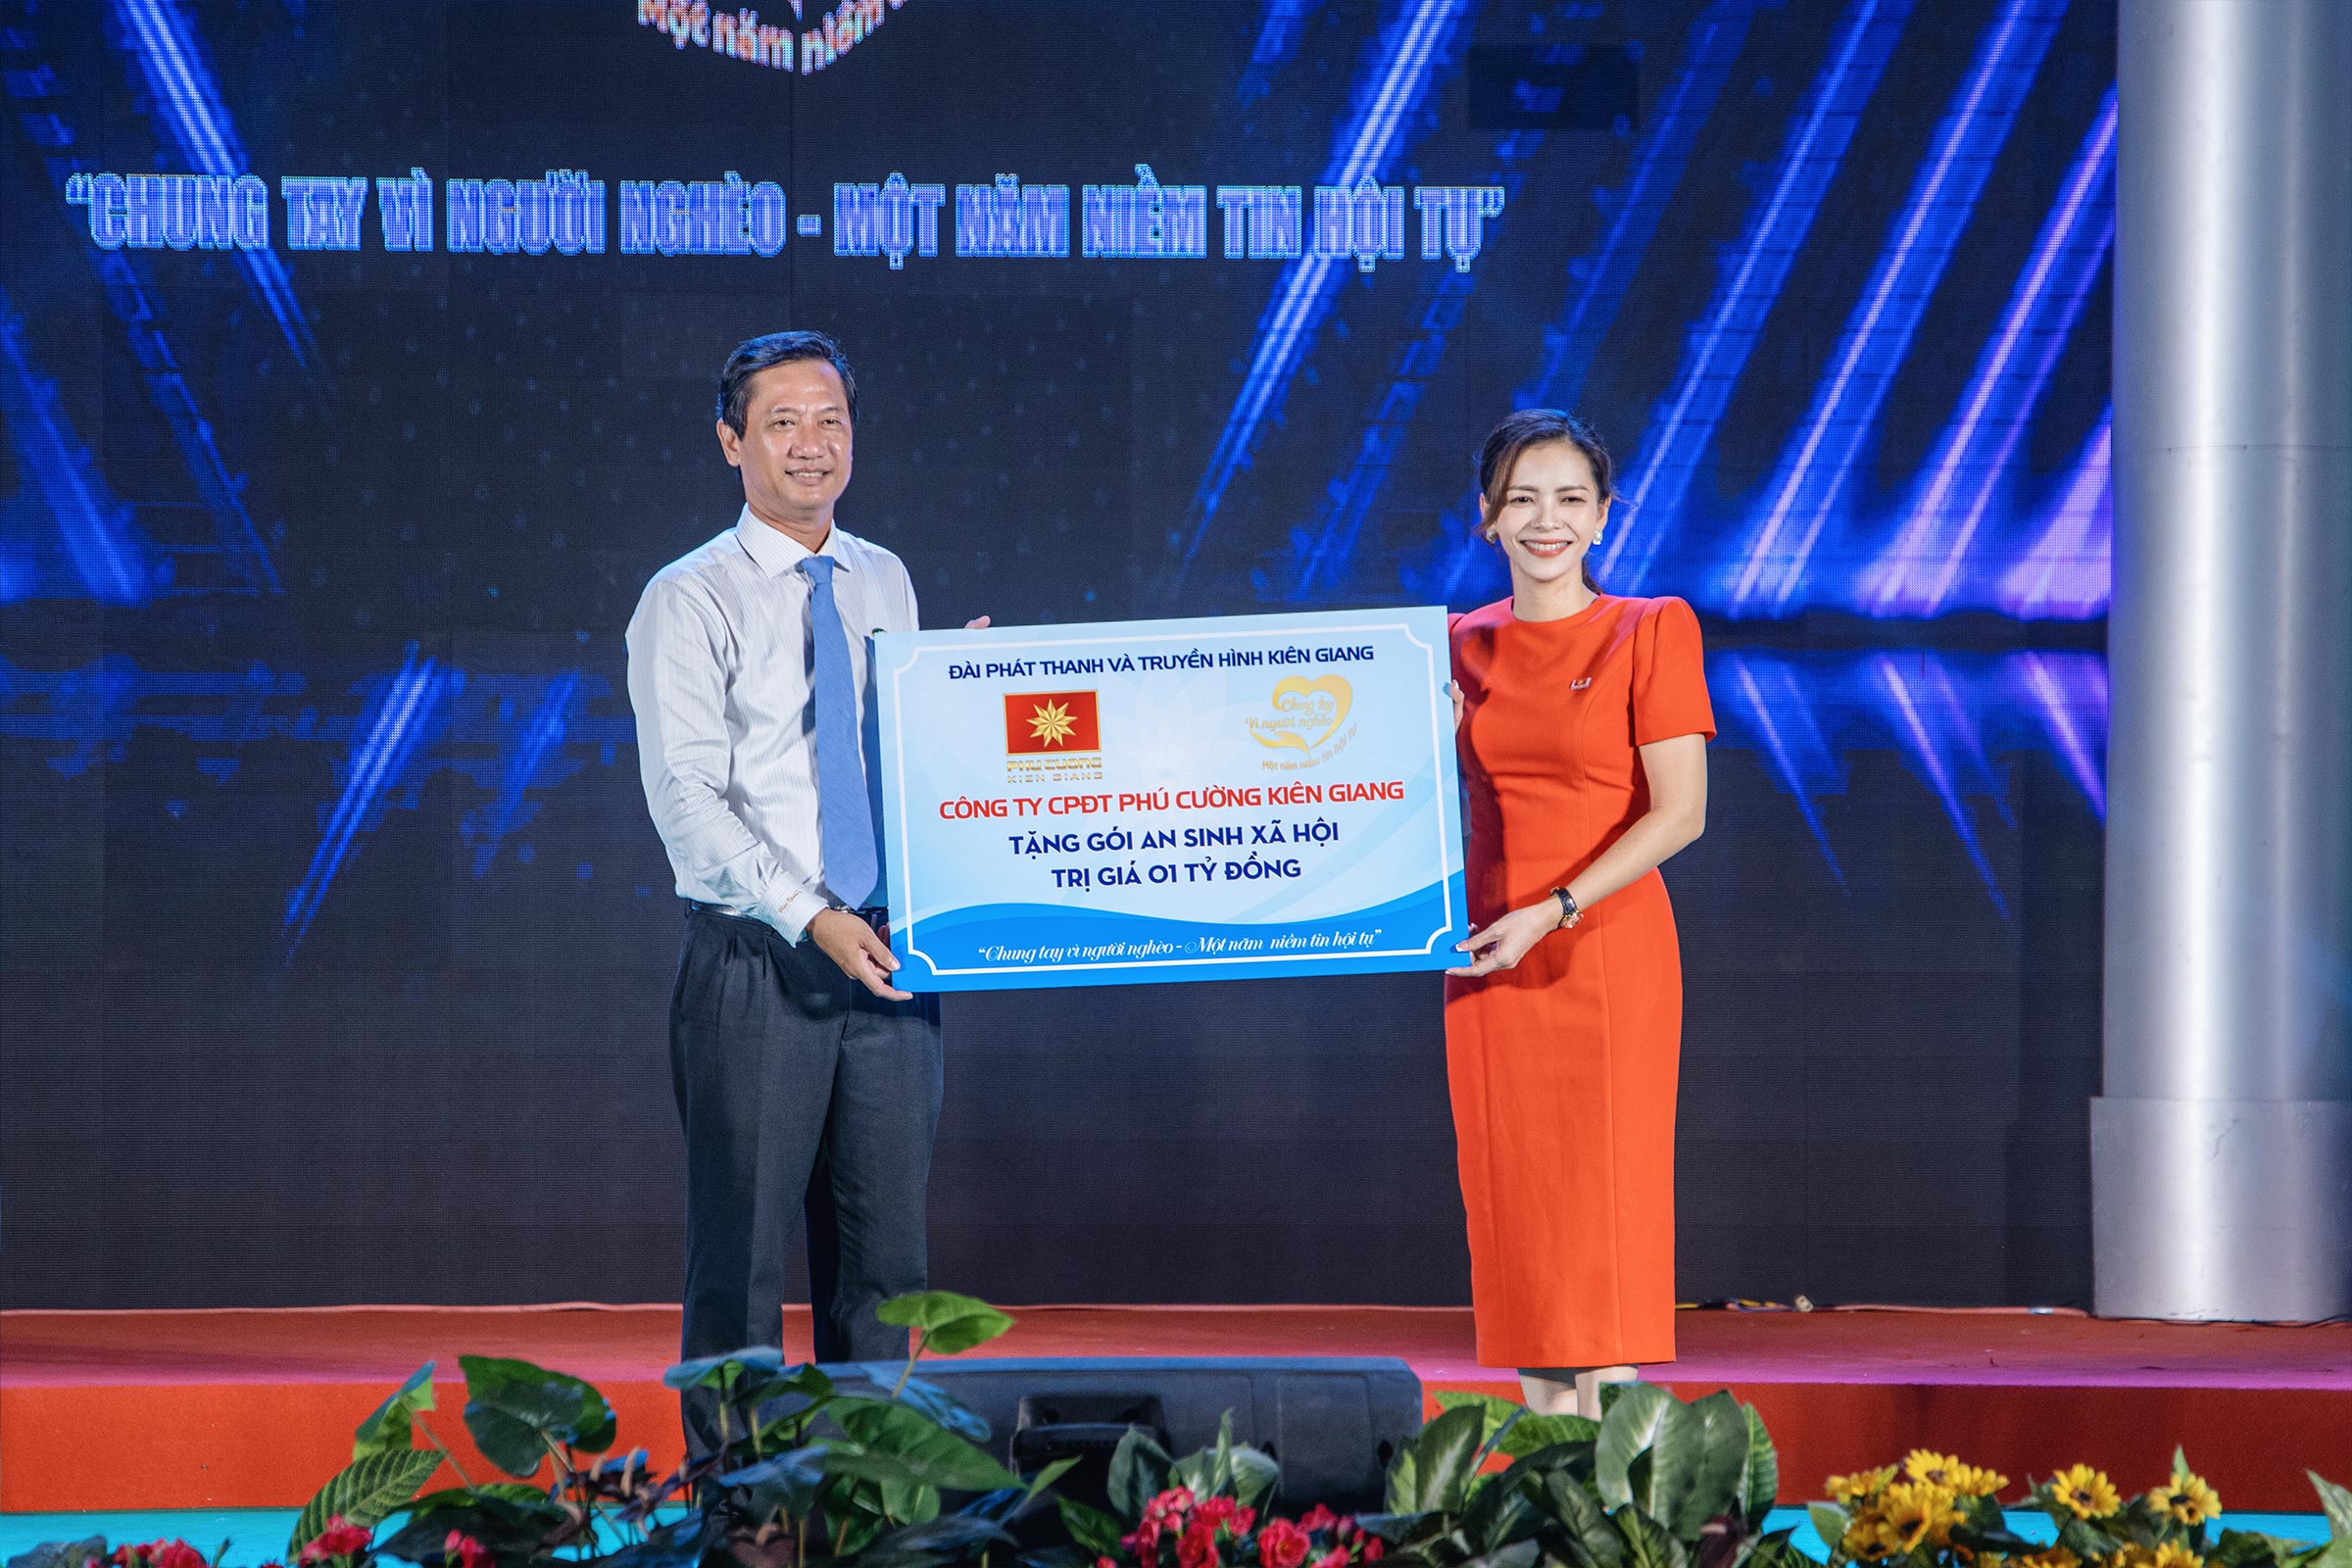 Phú Cường Kiên Giang đồng hành cùng chương trình “Chung tay vì người nghèo”